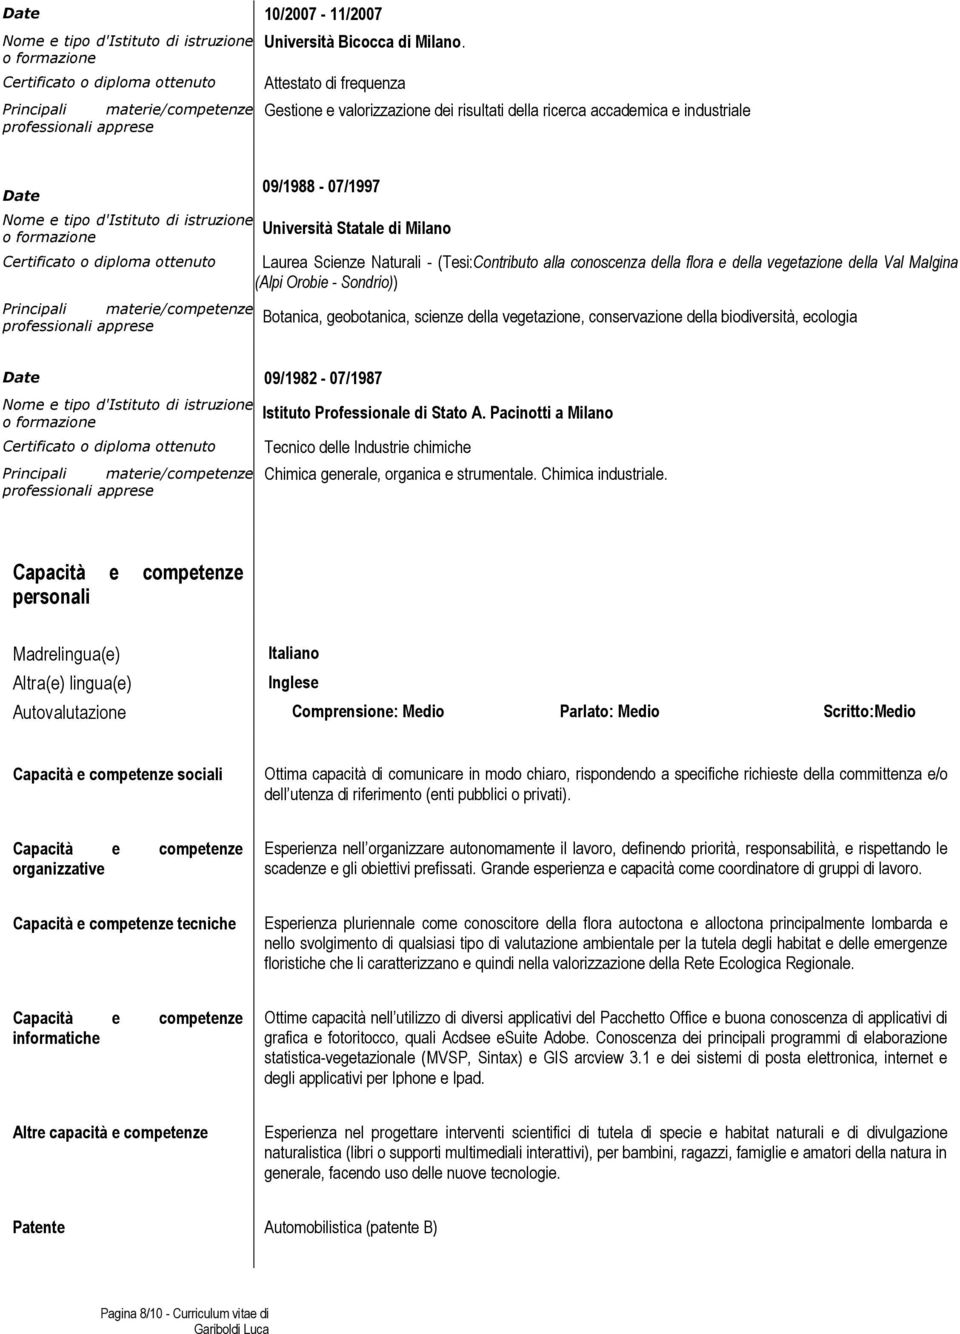 formazione Certificato o diploma ottenuto 09/1988-07/1997 Università Statale di Milano Laurea Scienze Naturali - (Tesi:Contributo alla conoscenza della flora e della vegetazione della Val Malgina